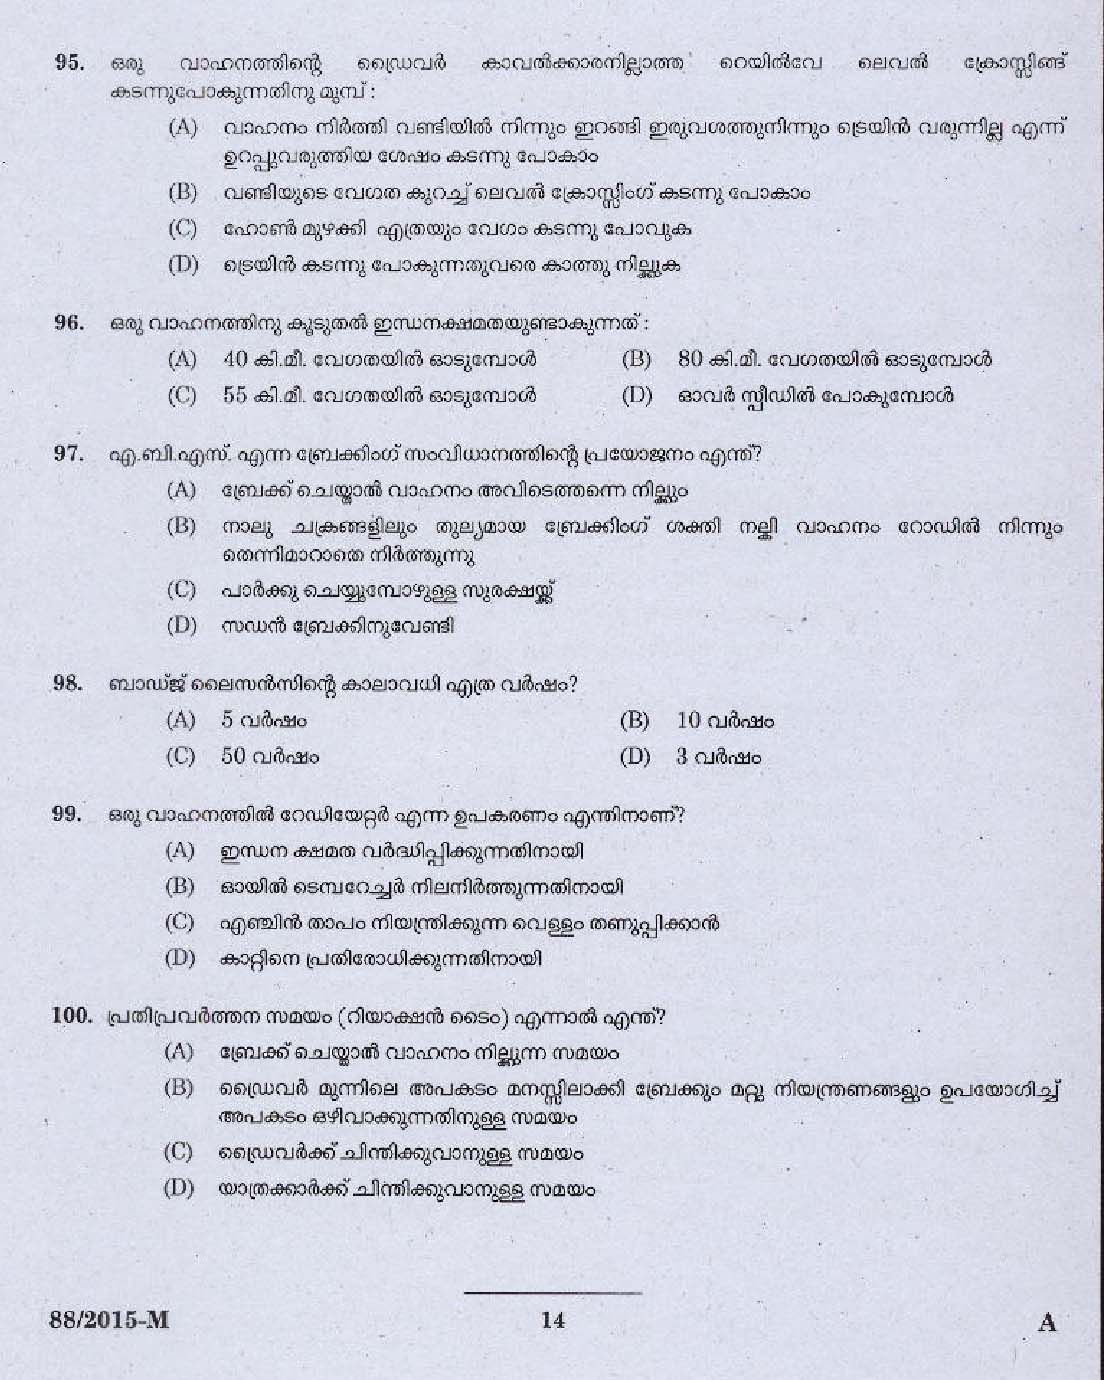 Kerala PSC Driver Grade II Exam 2015 Question Paper Code 882015 M 12